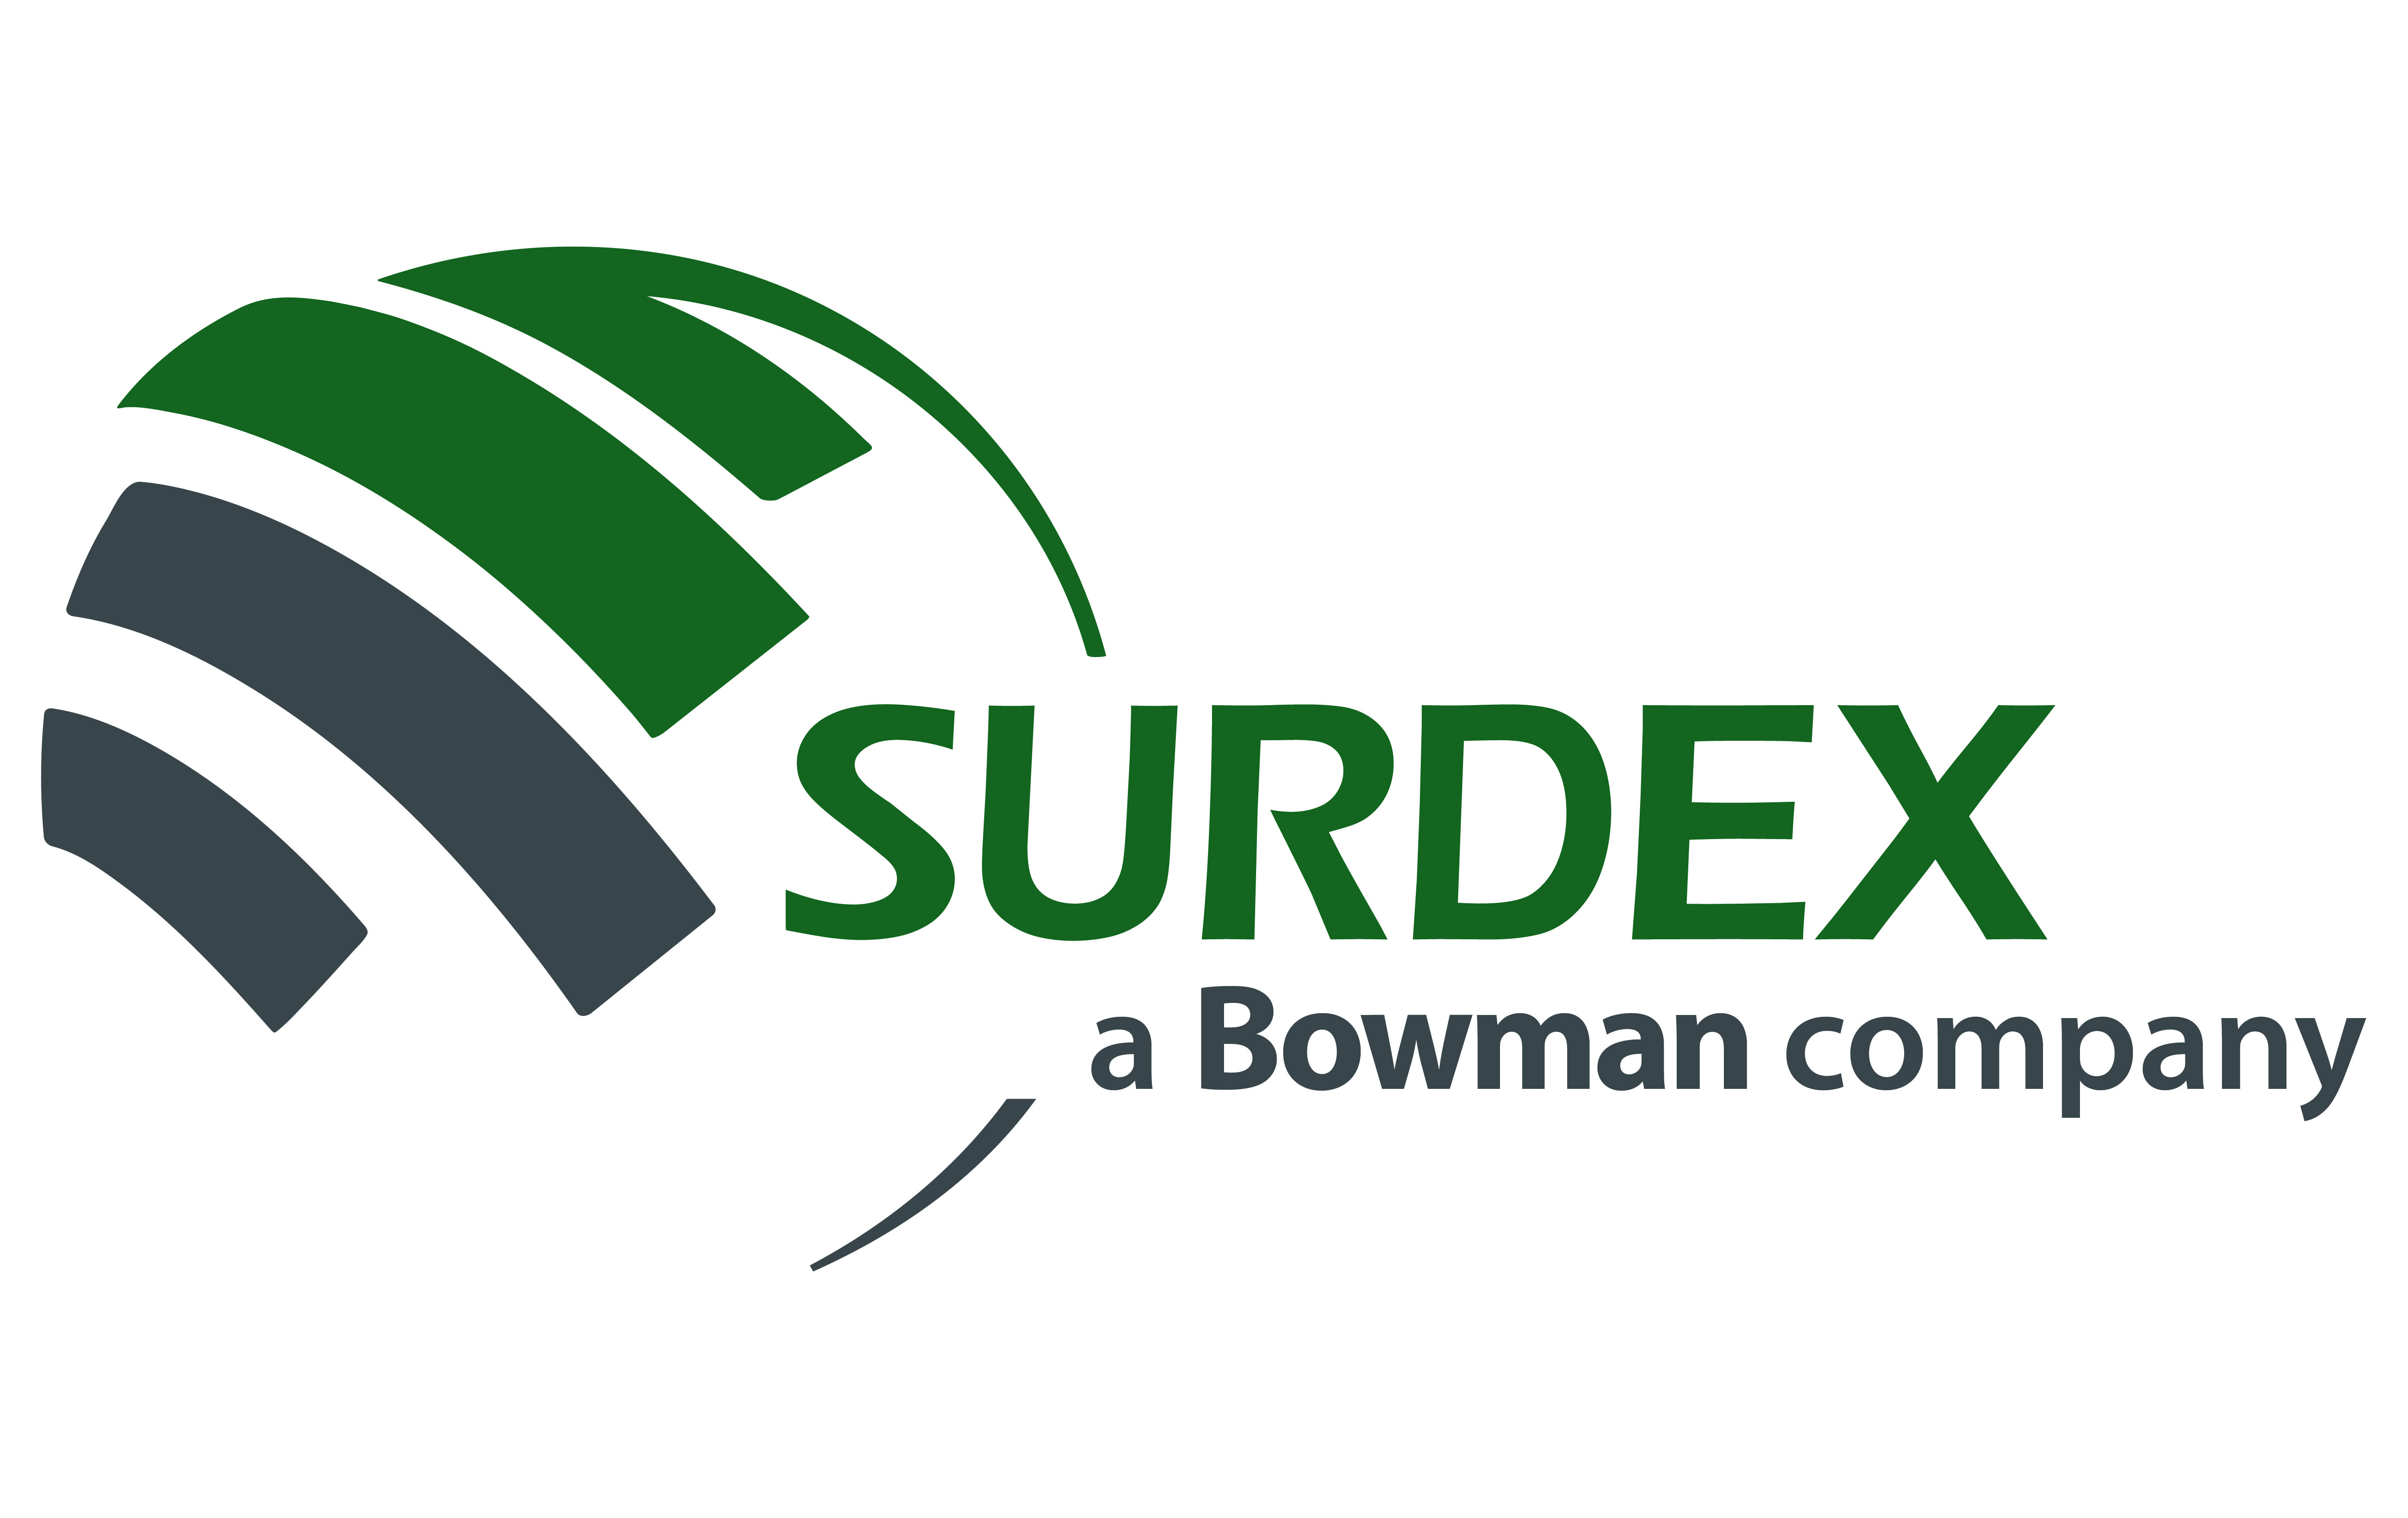 Surdex